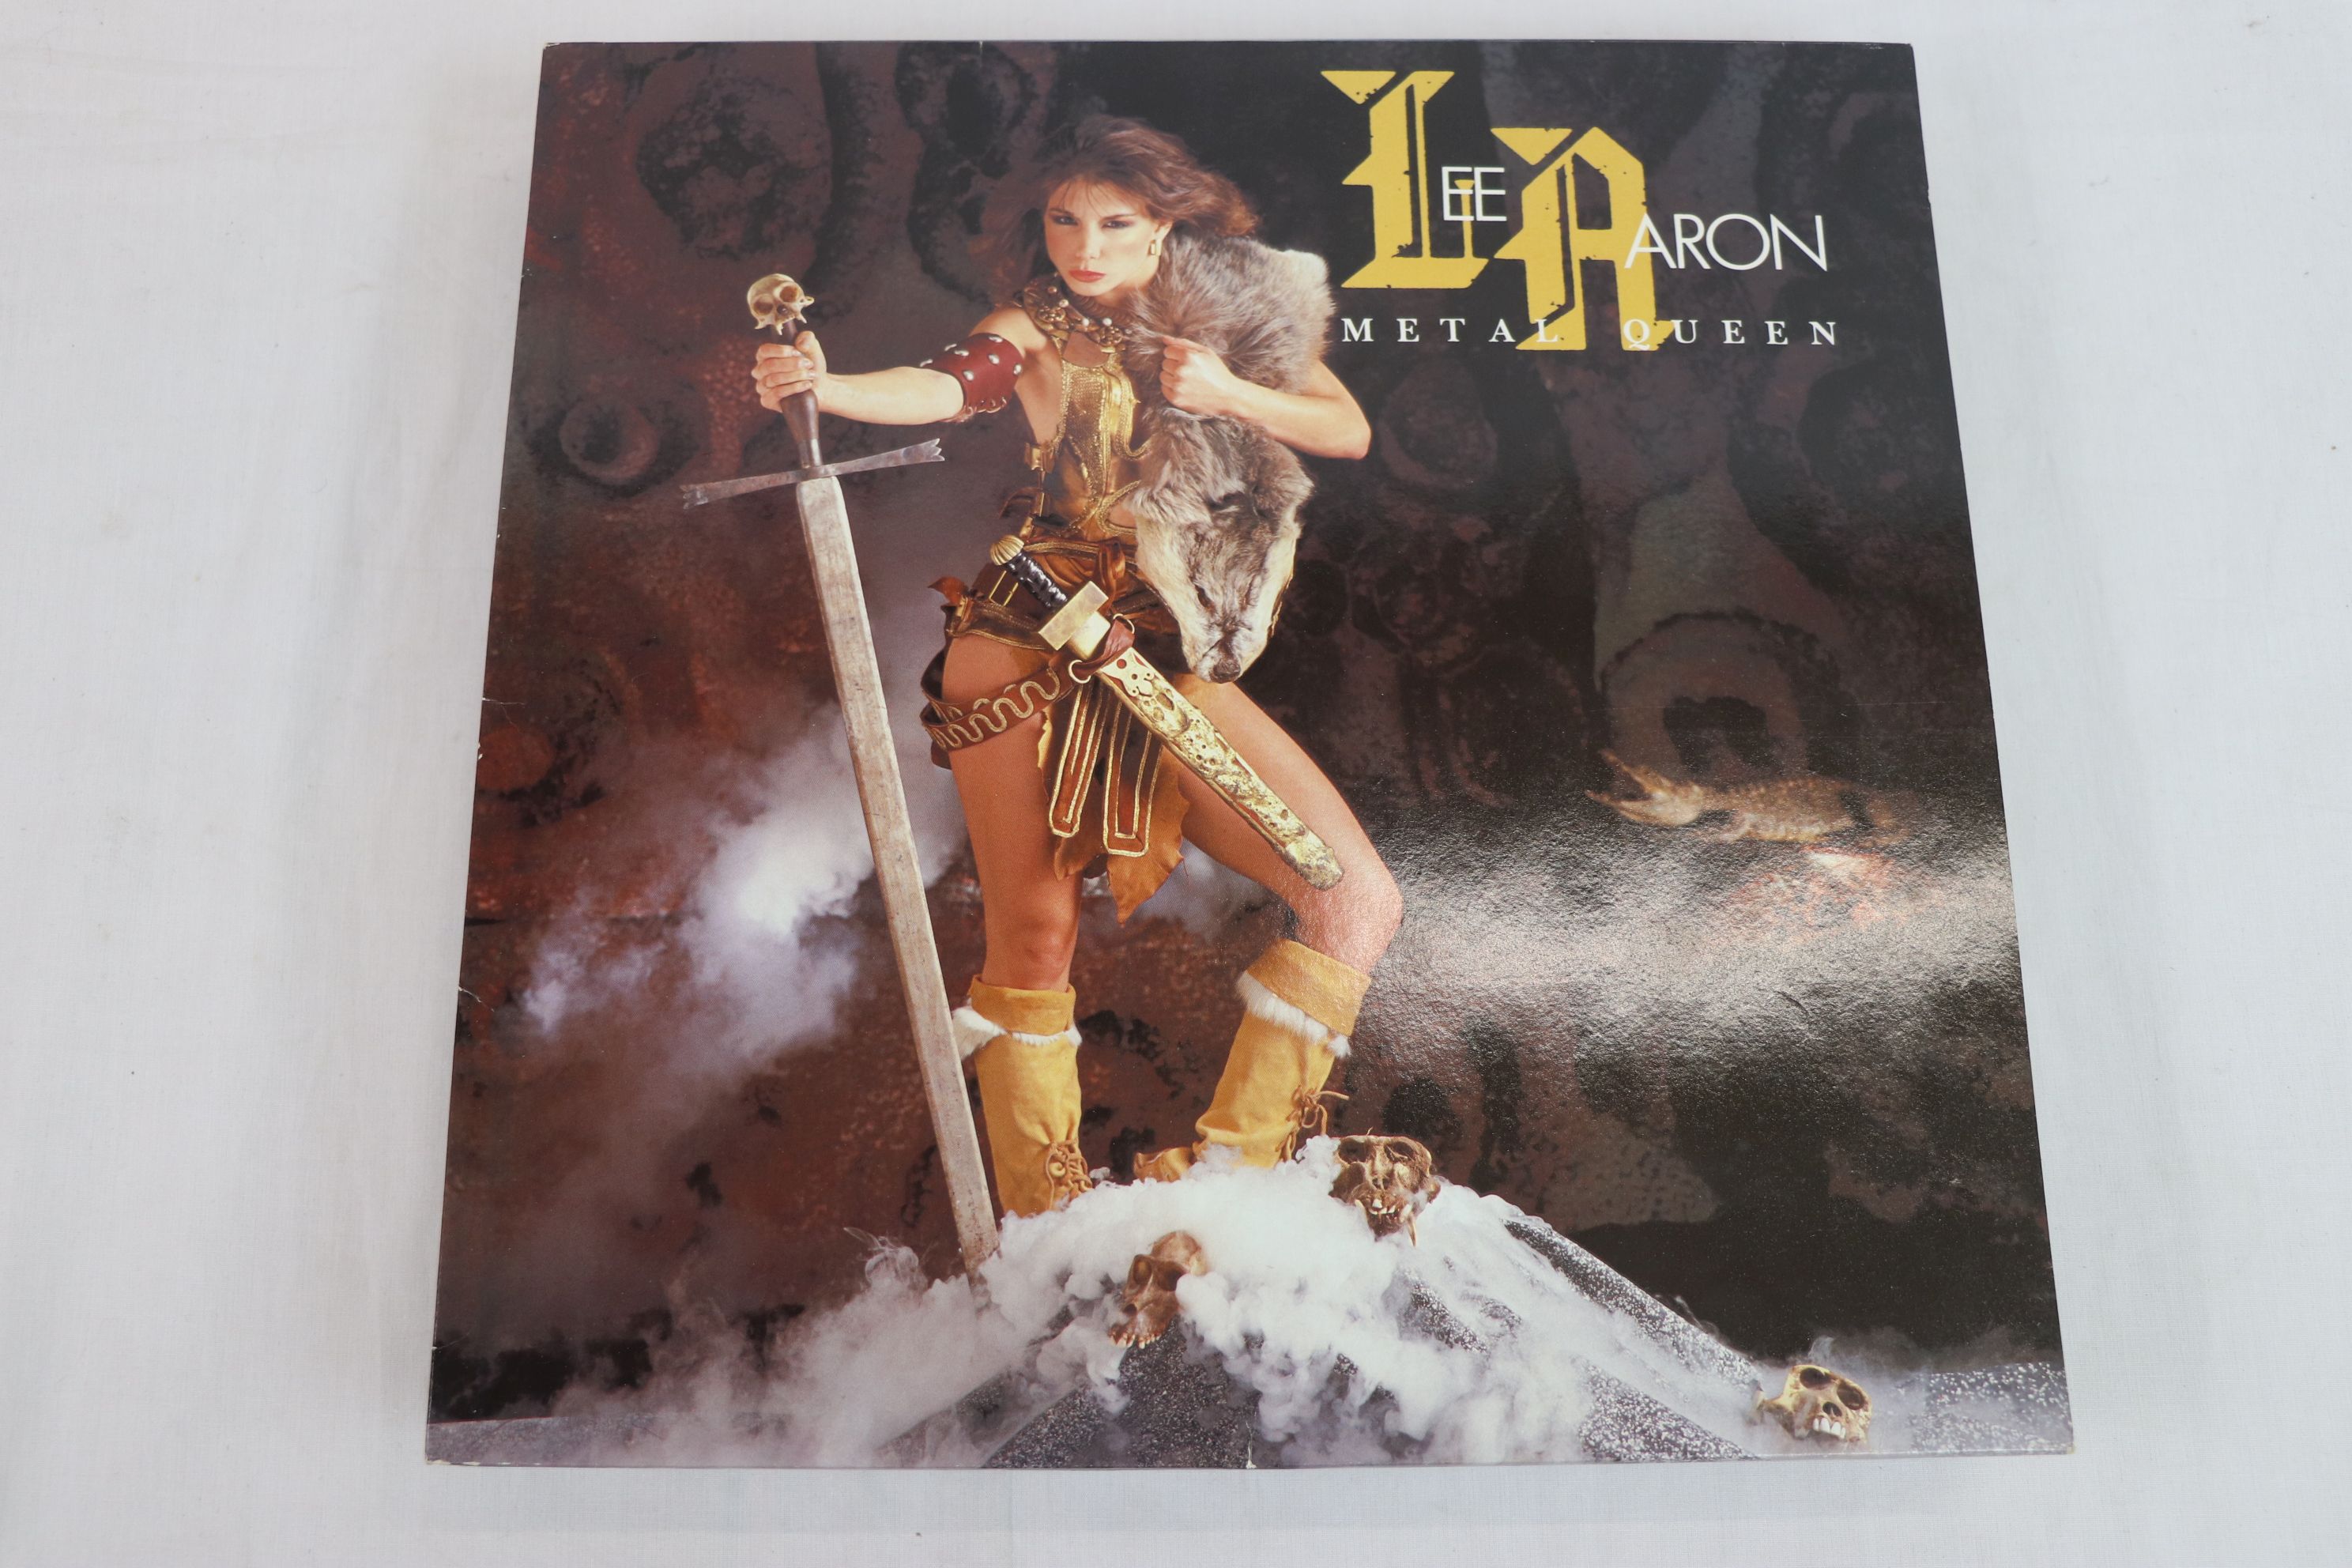 Vinyl - Collection of 15 x Heavy Metal vinyl LP's to include Accept - Metal Heart, Vixen - Vixen, - Image 5 of 17